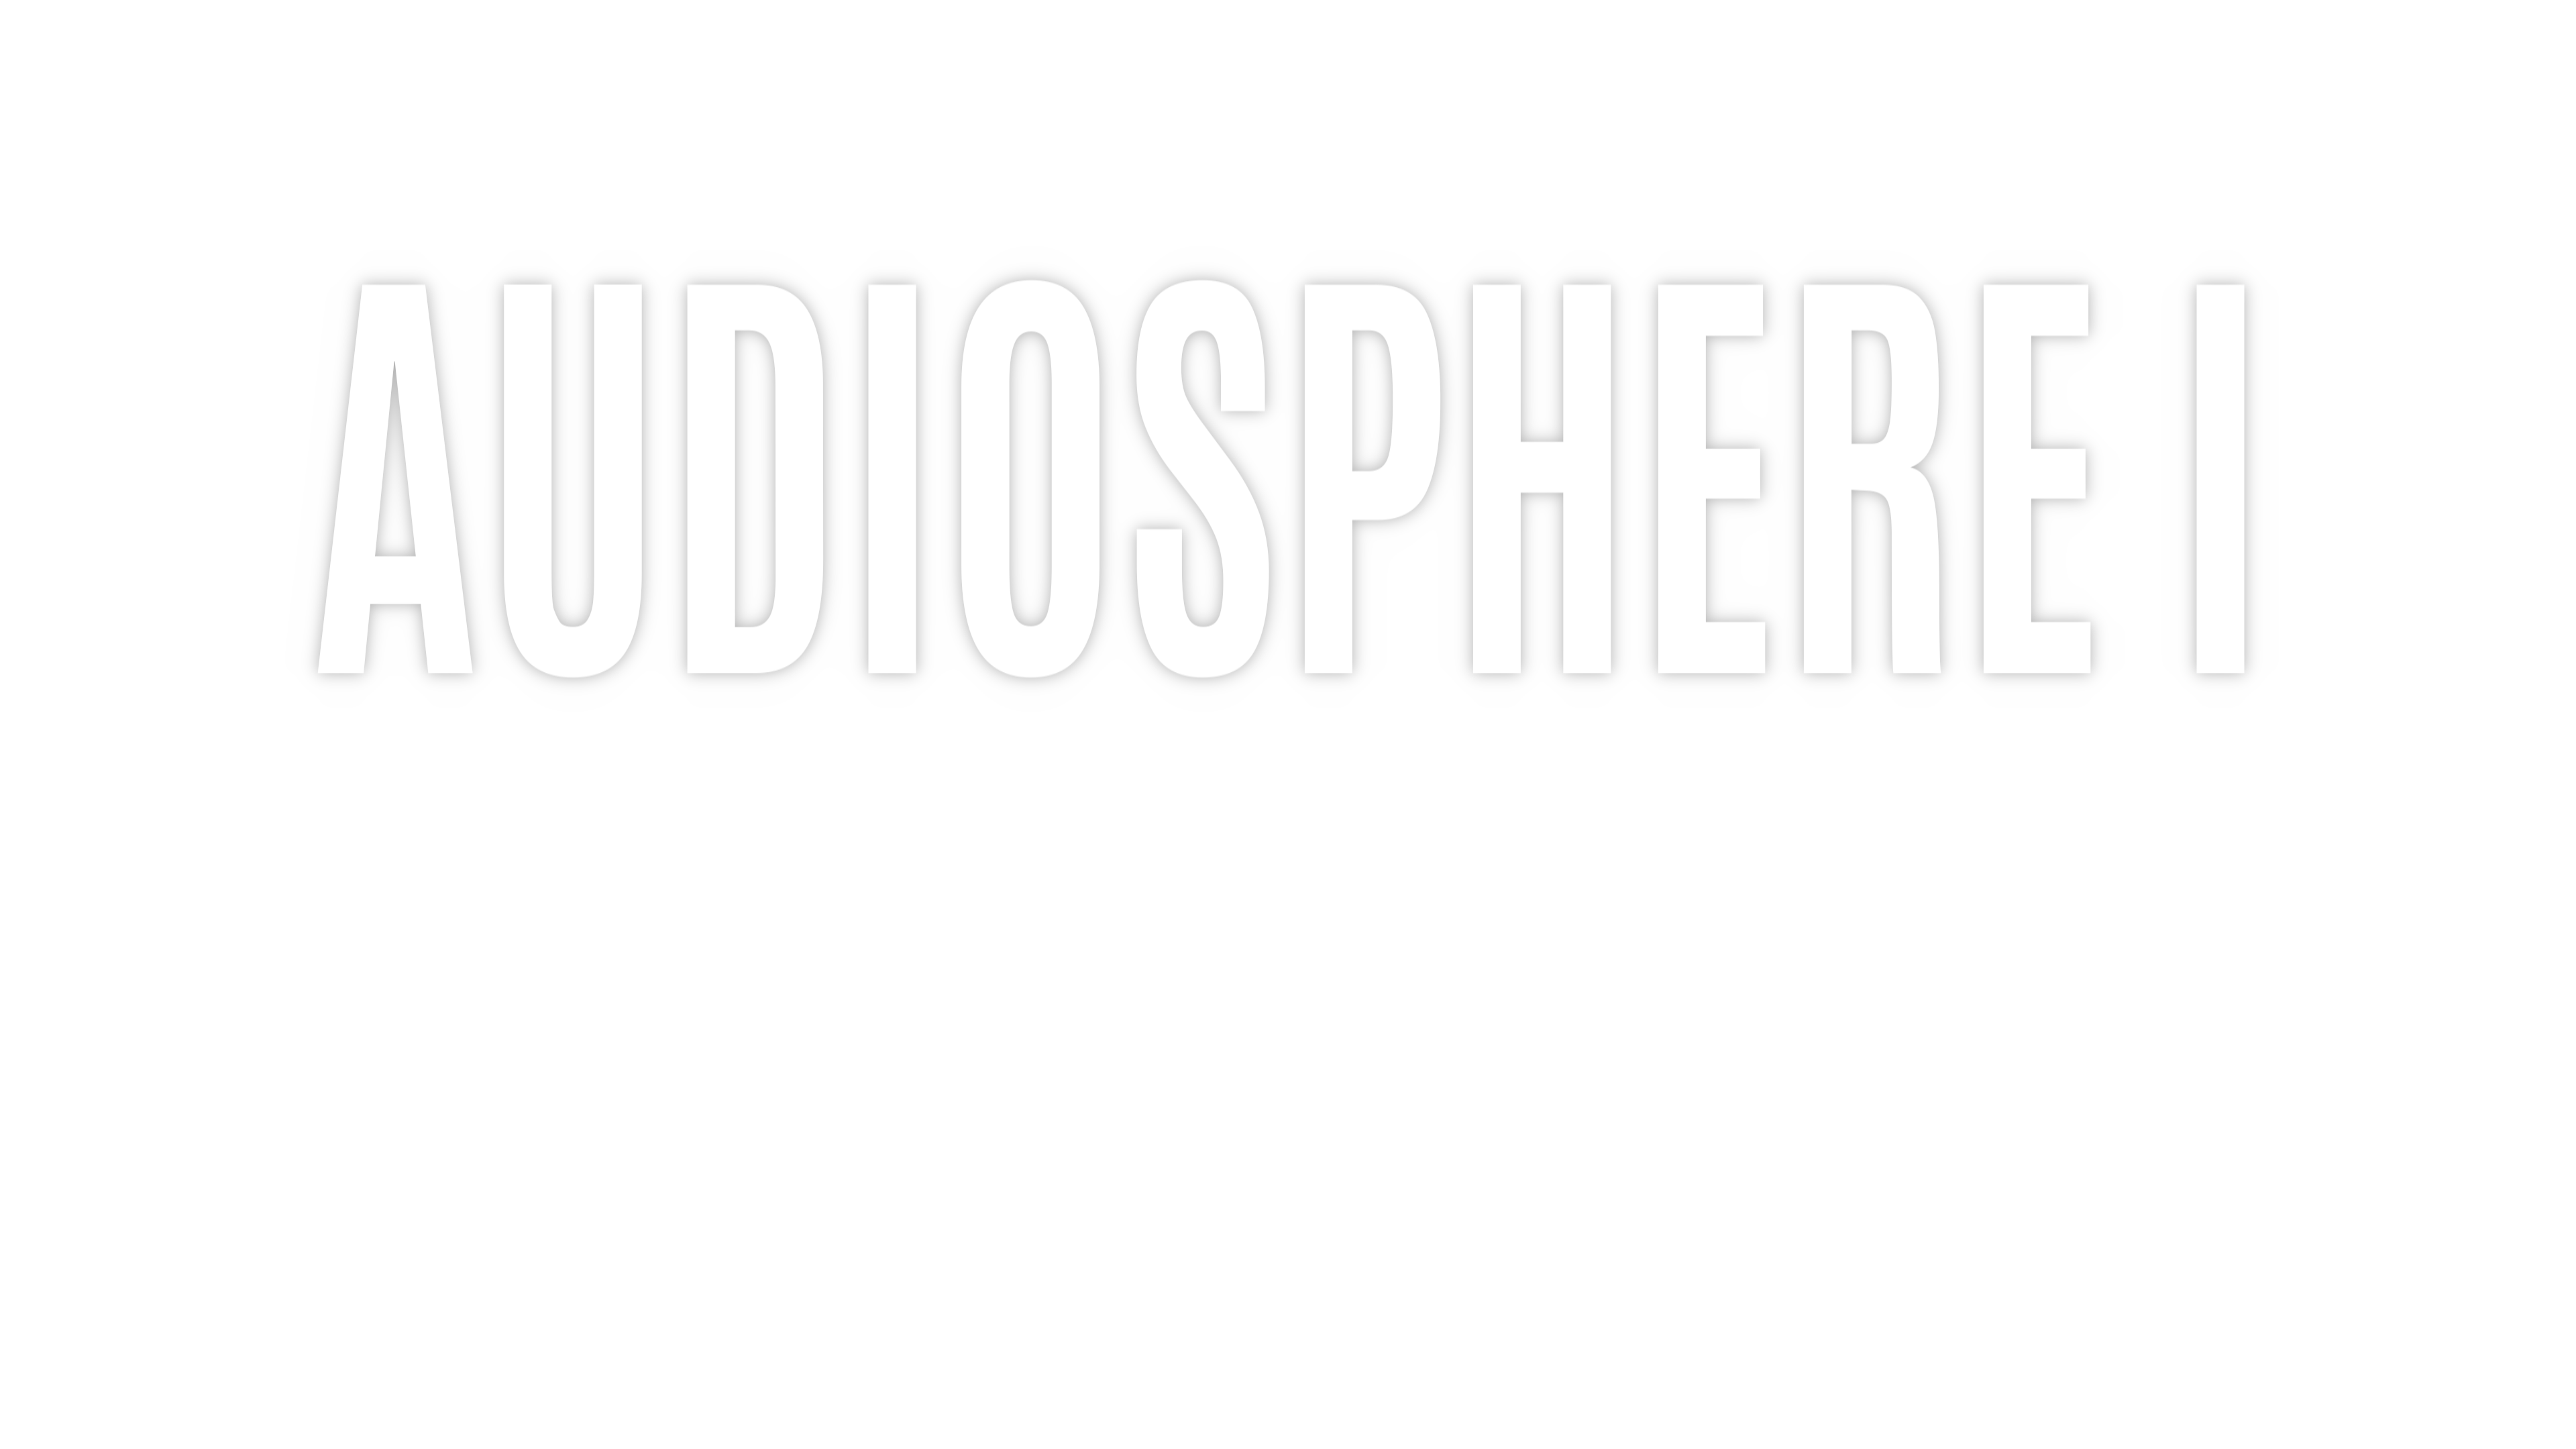 AudioSphere I